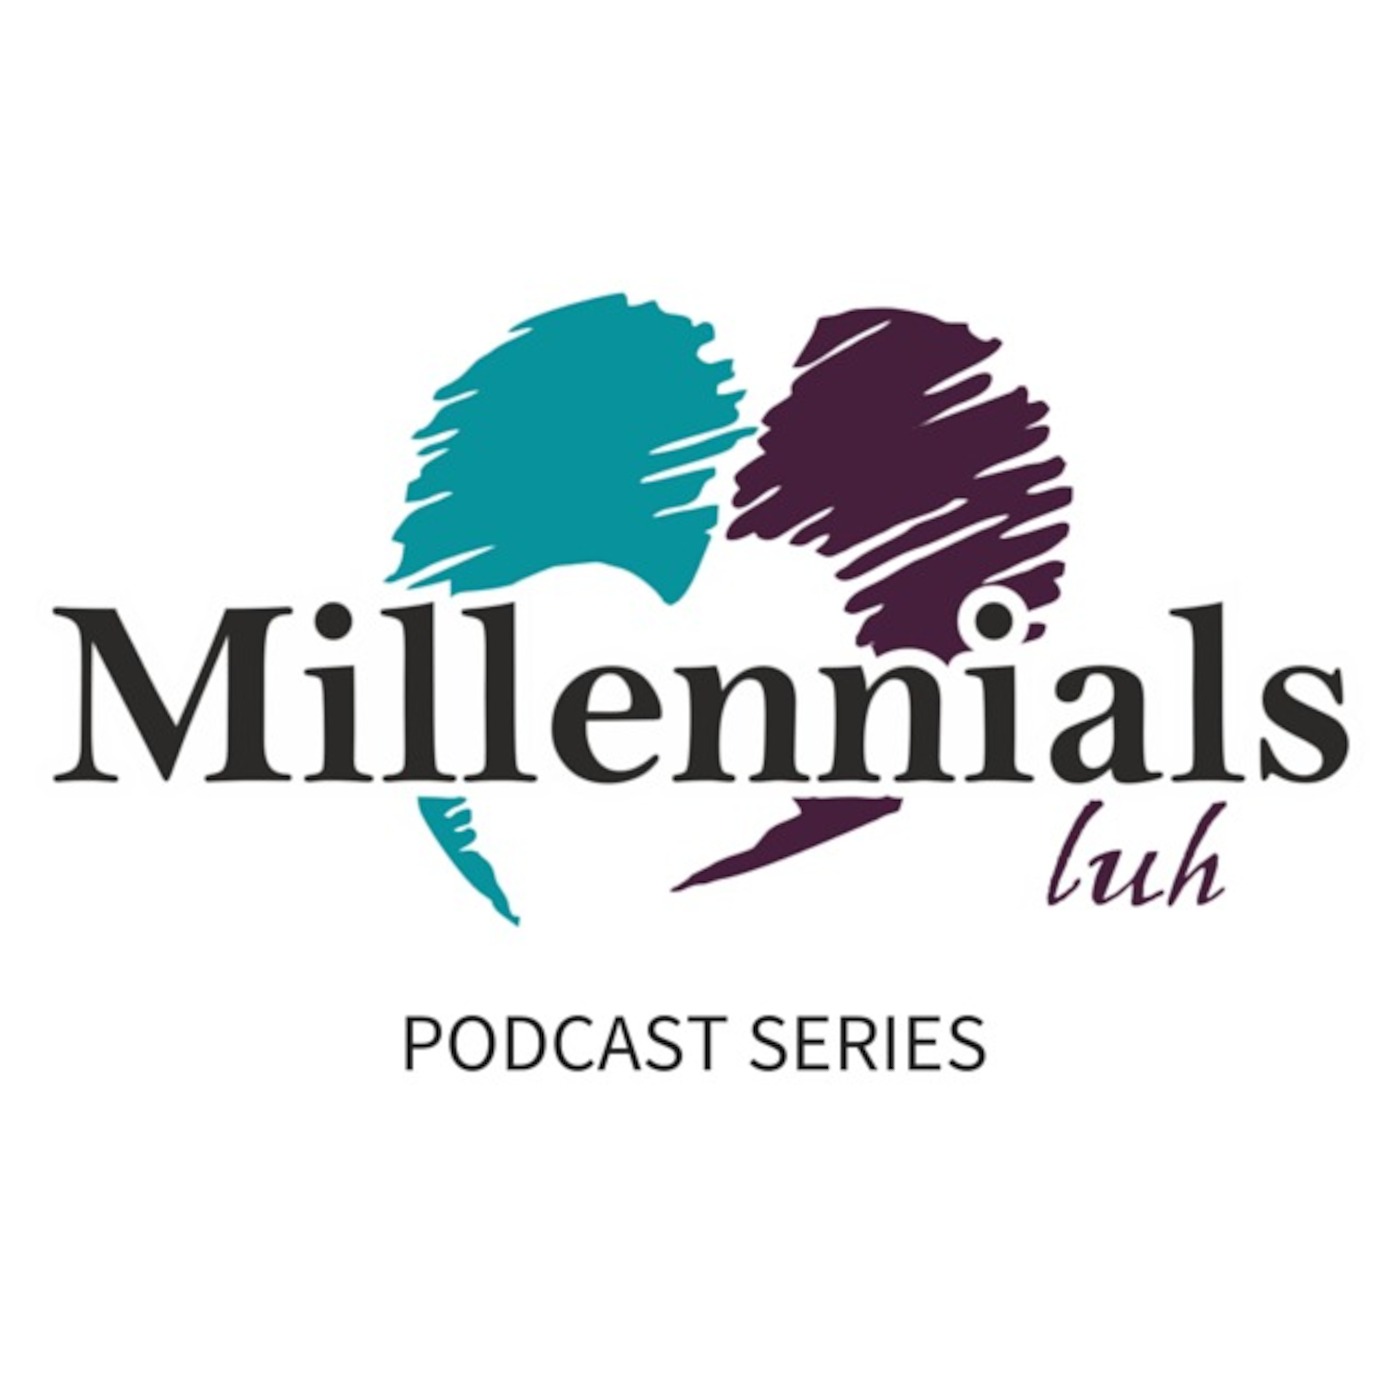 Millennials luh Podcast Series